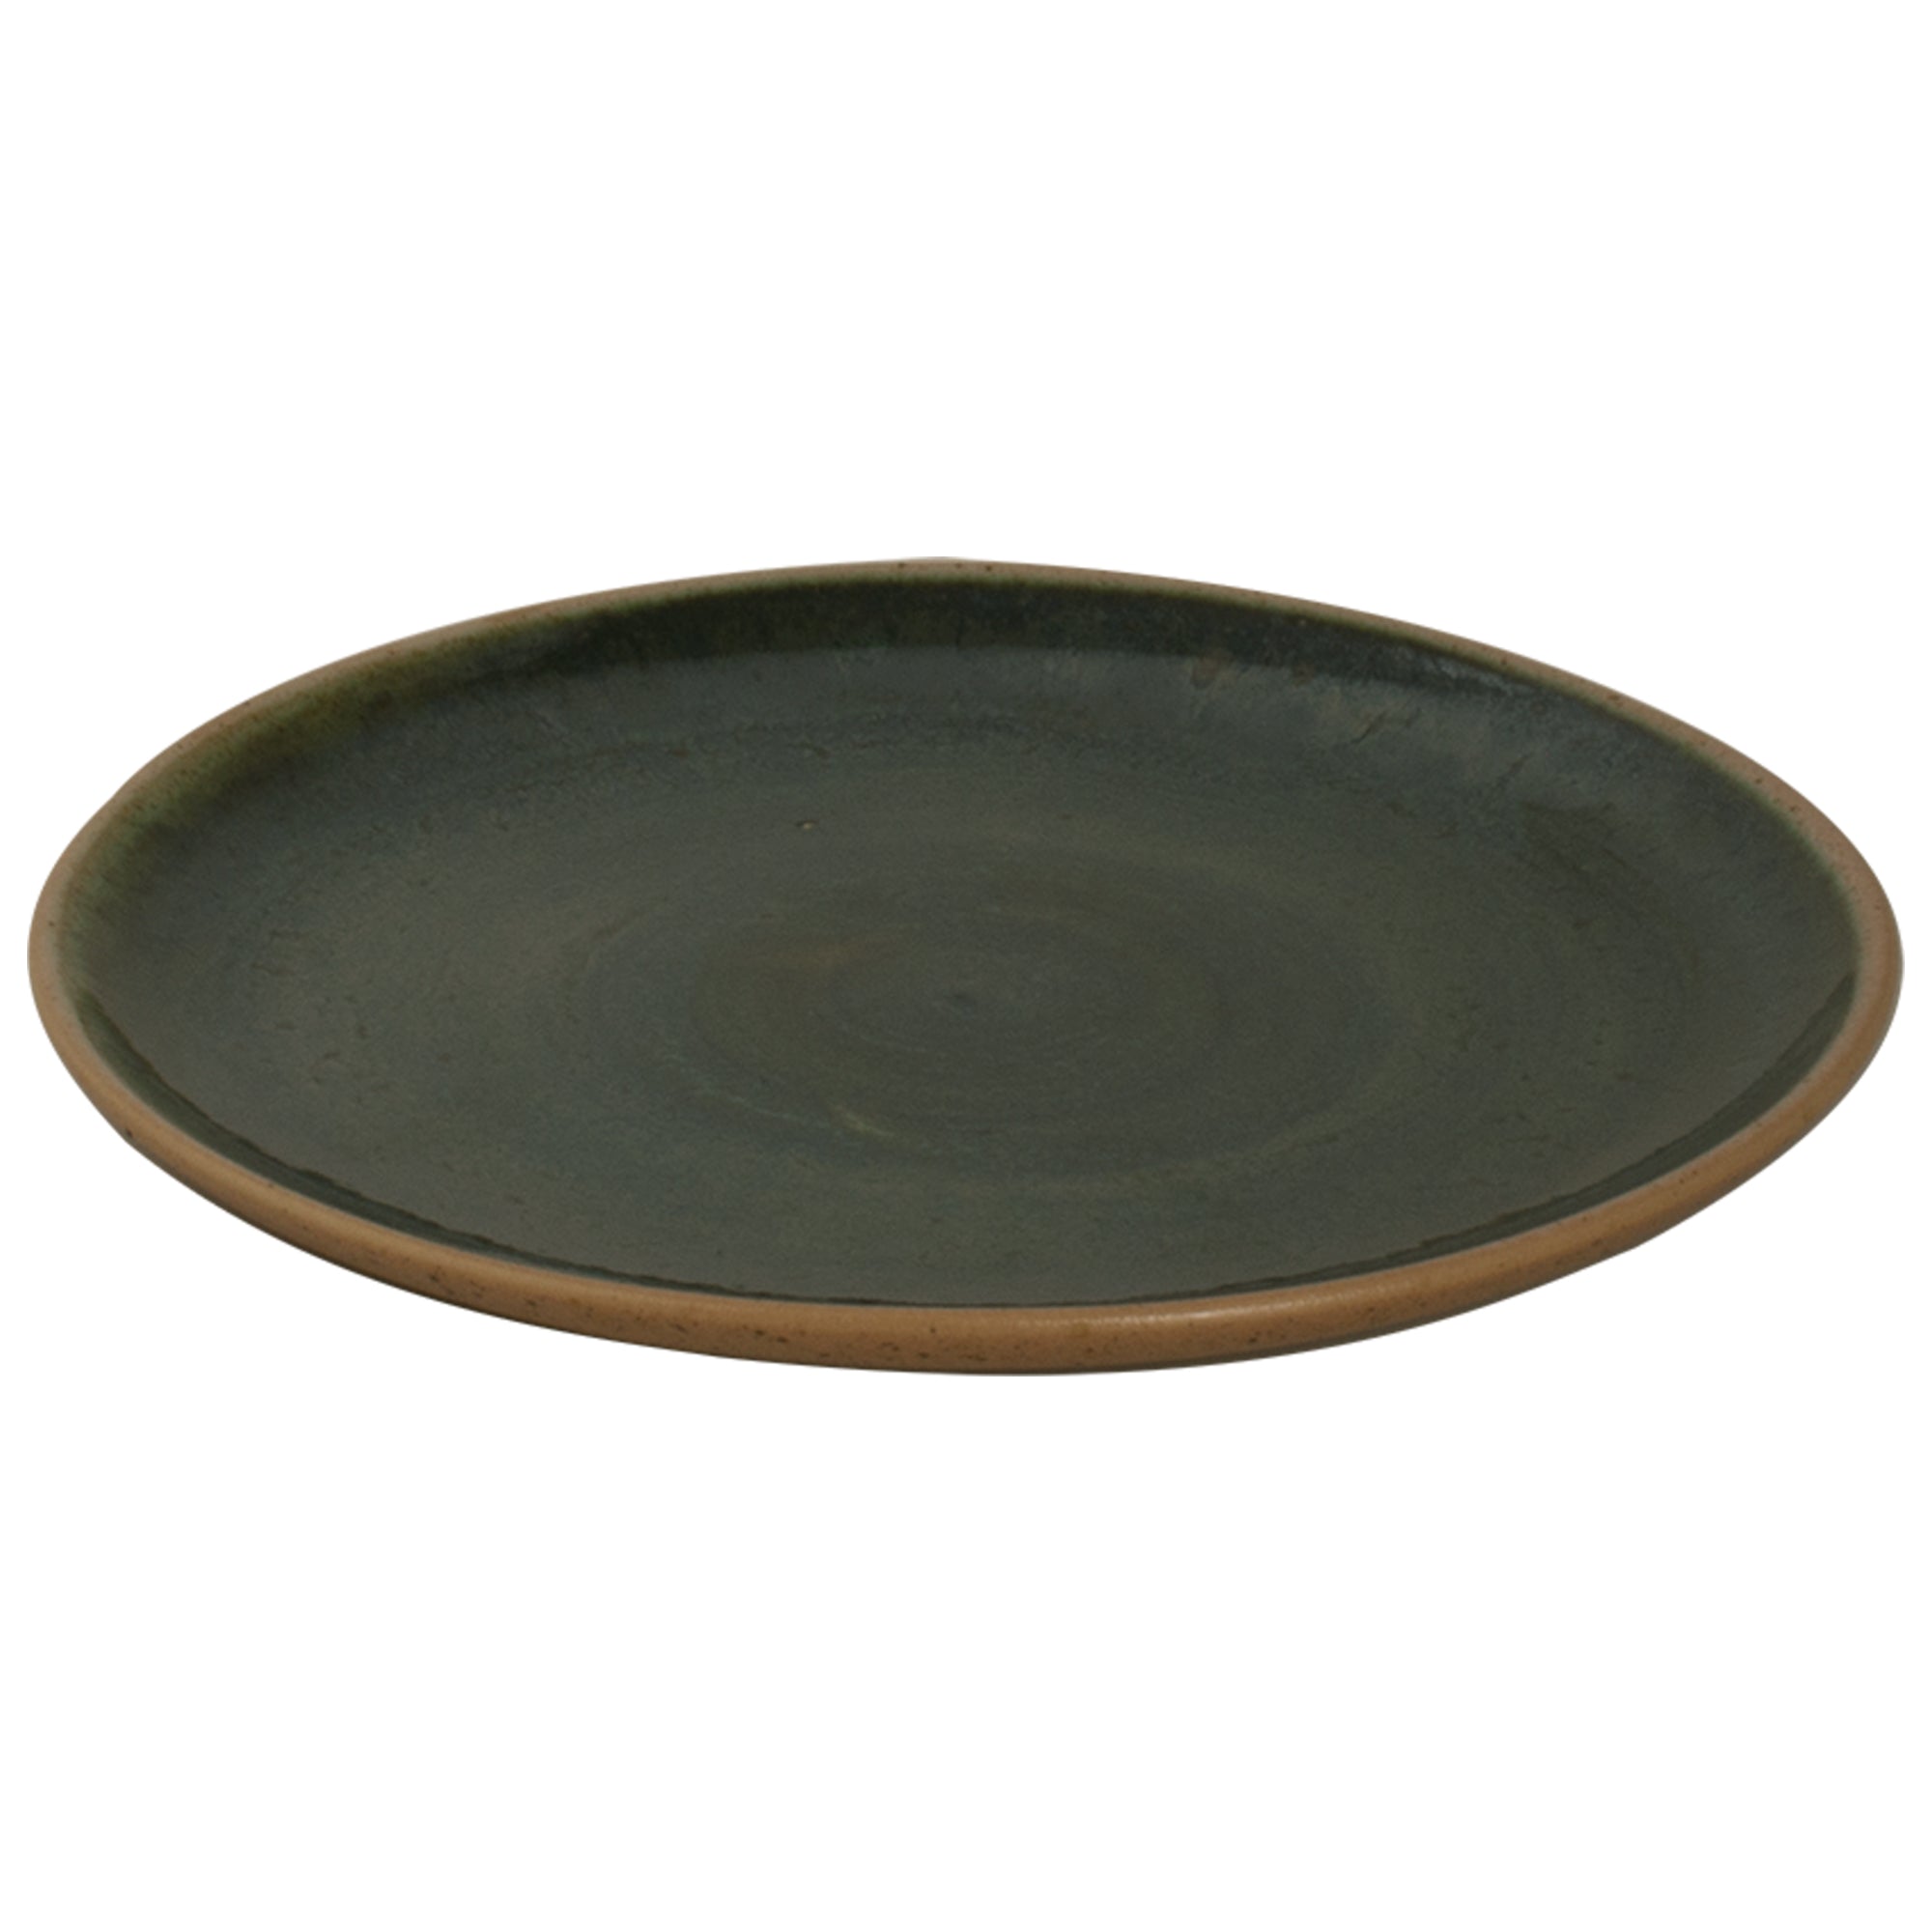 (6 броя) WISTERIA - Плоска чиния - Ø 22 см - Зелена/Бежова